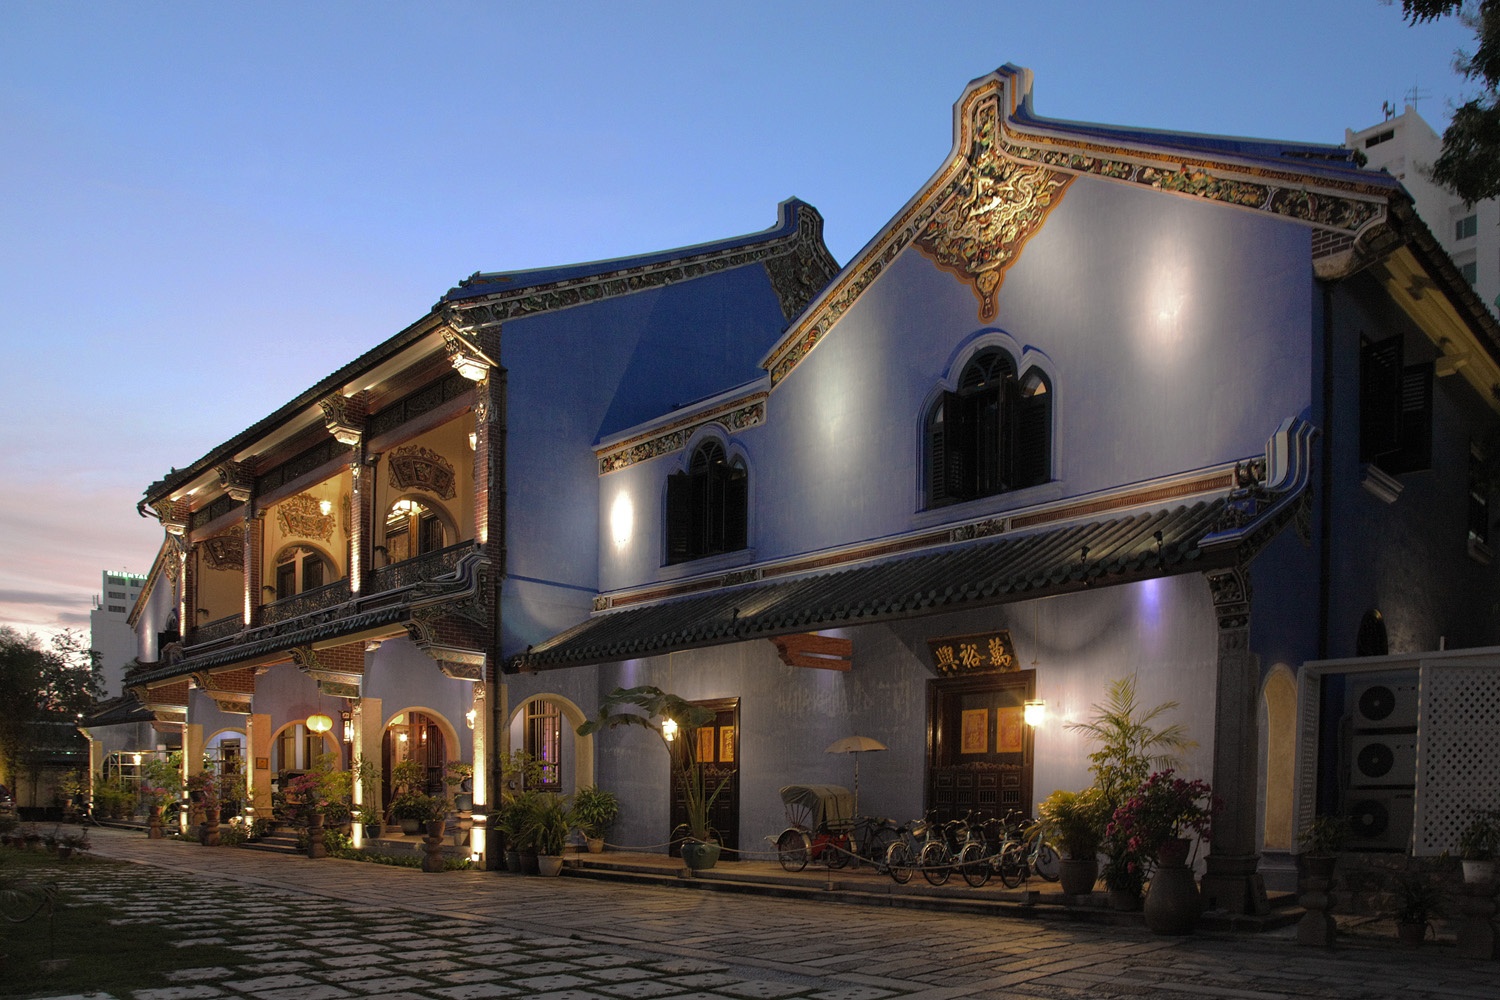 bill-hocker-blue-mansion-penang-malaysia-2014